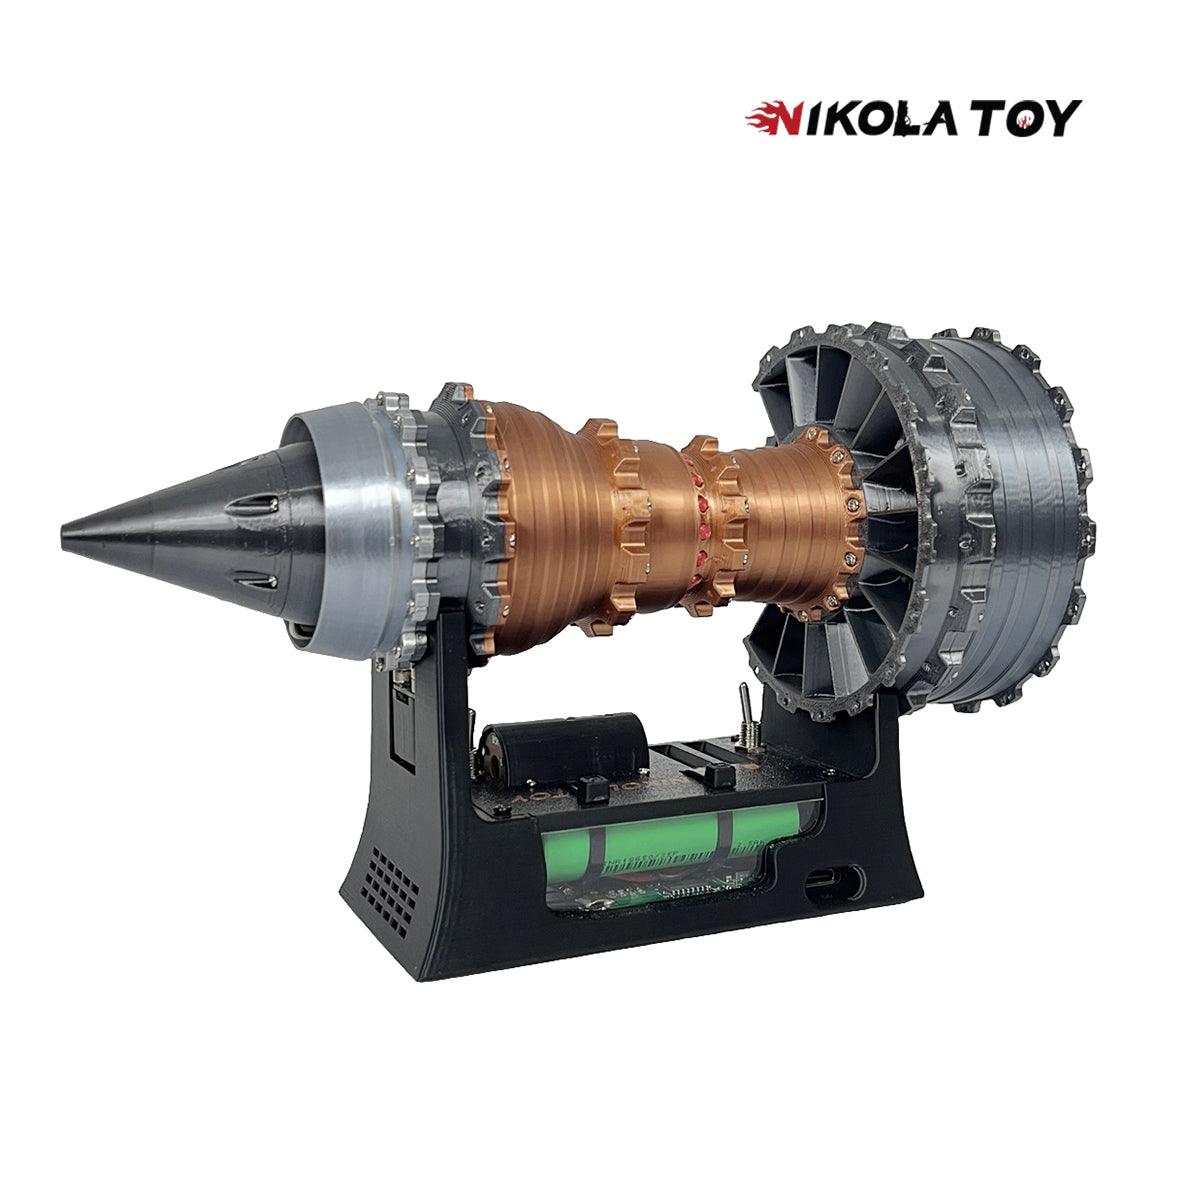 Brushless motor version super RR trent 900 turbofan engine model - Nikola Toy